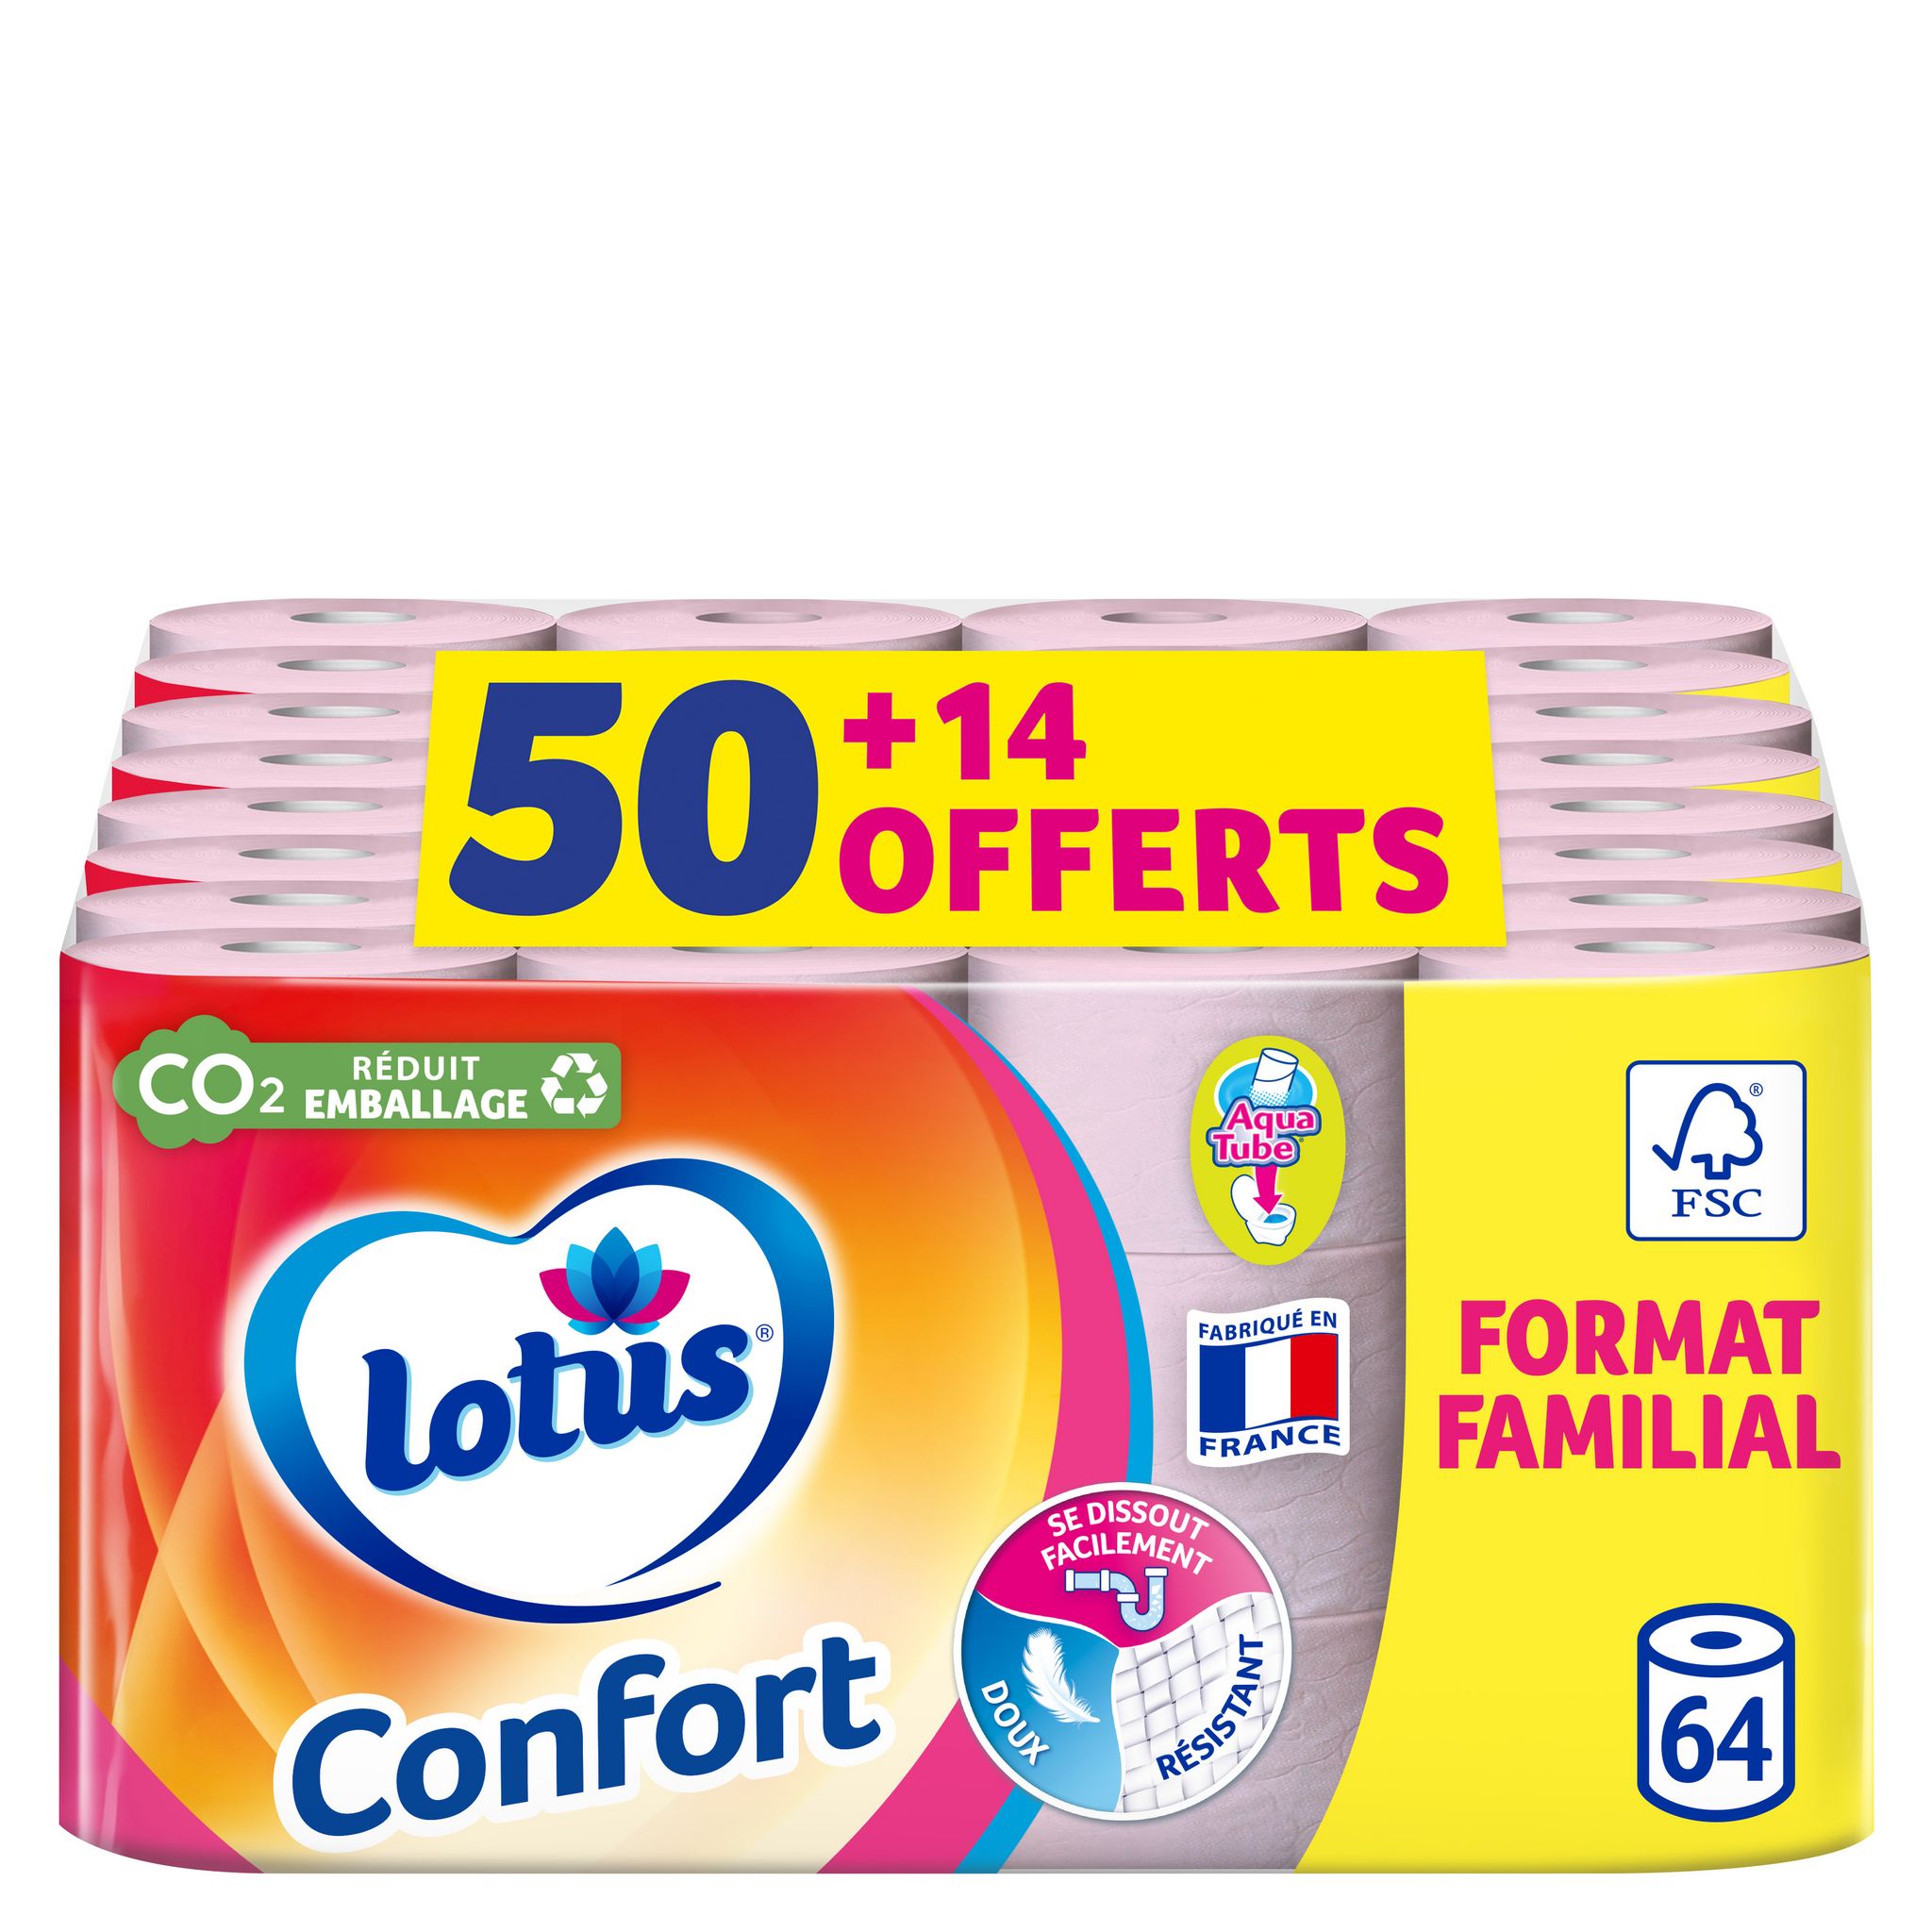 Papier Toilette Lotus Confort Blanc 24 rouleaux - Offre Spéciale